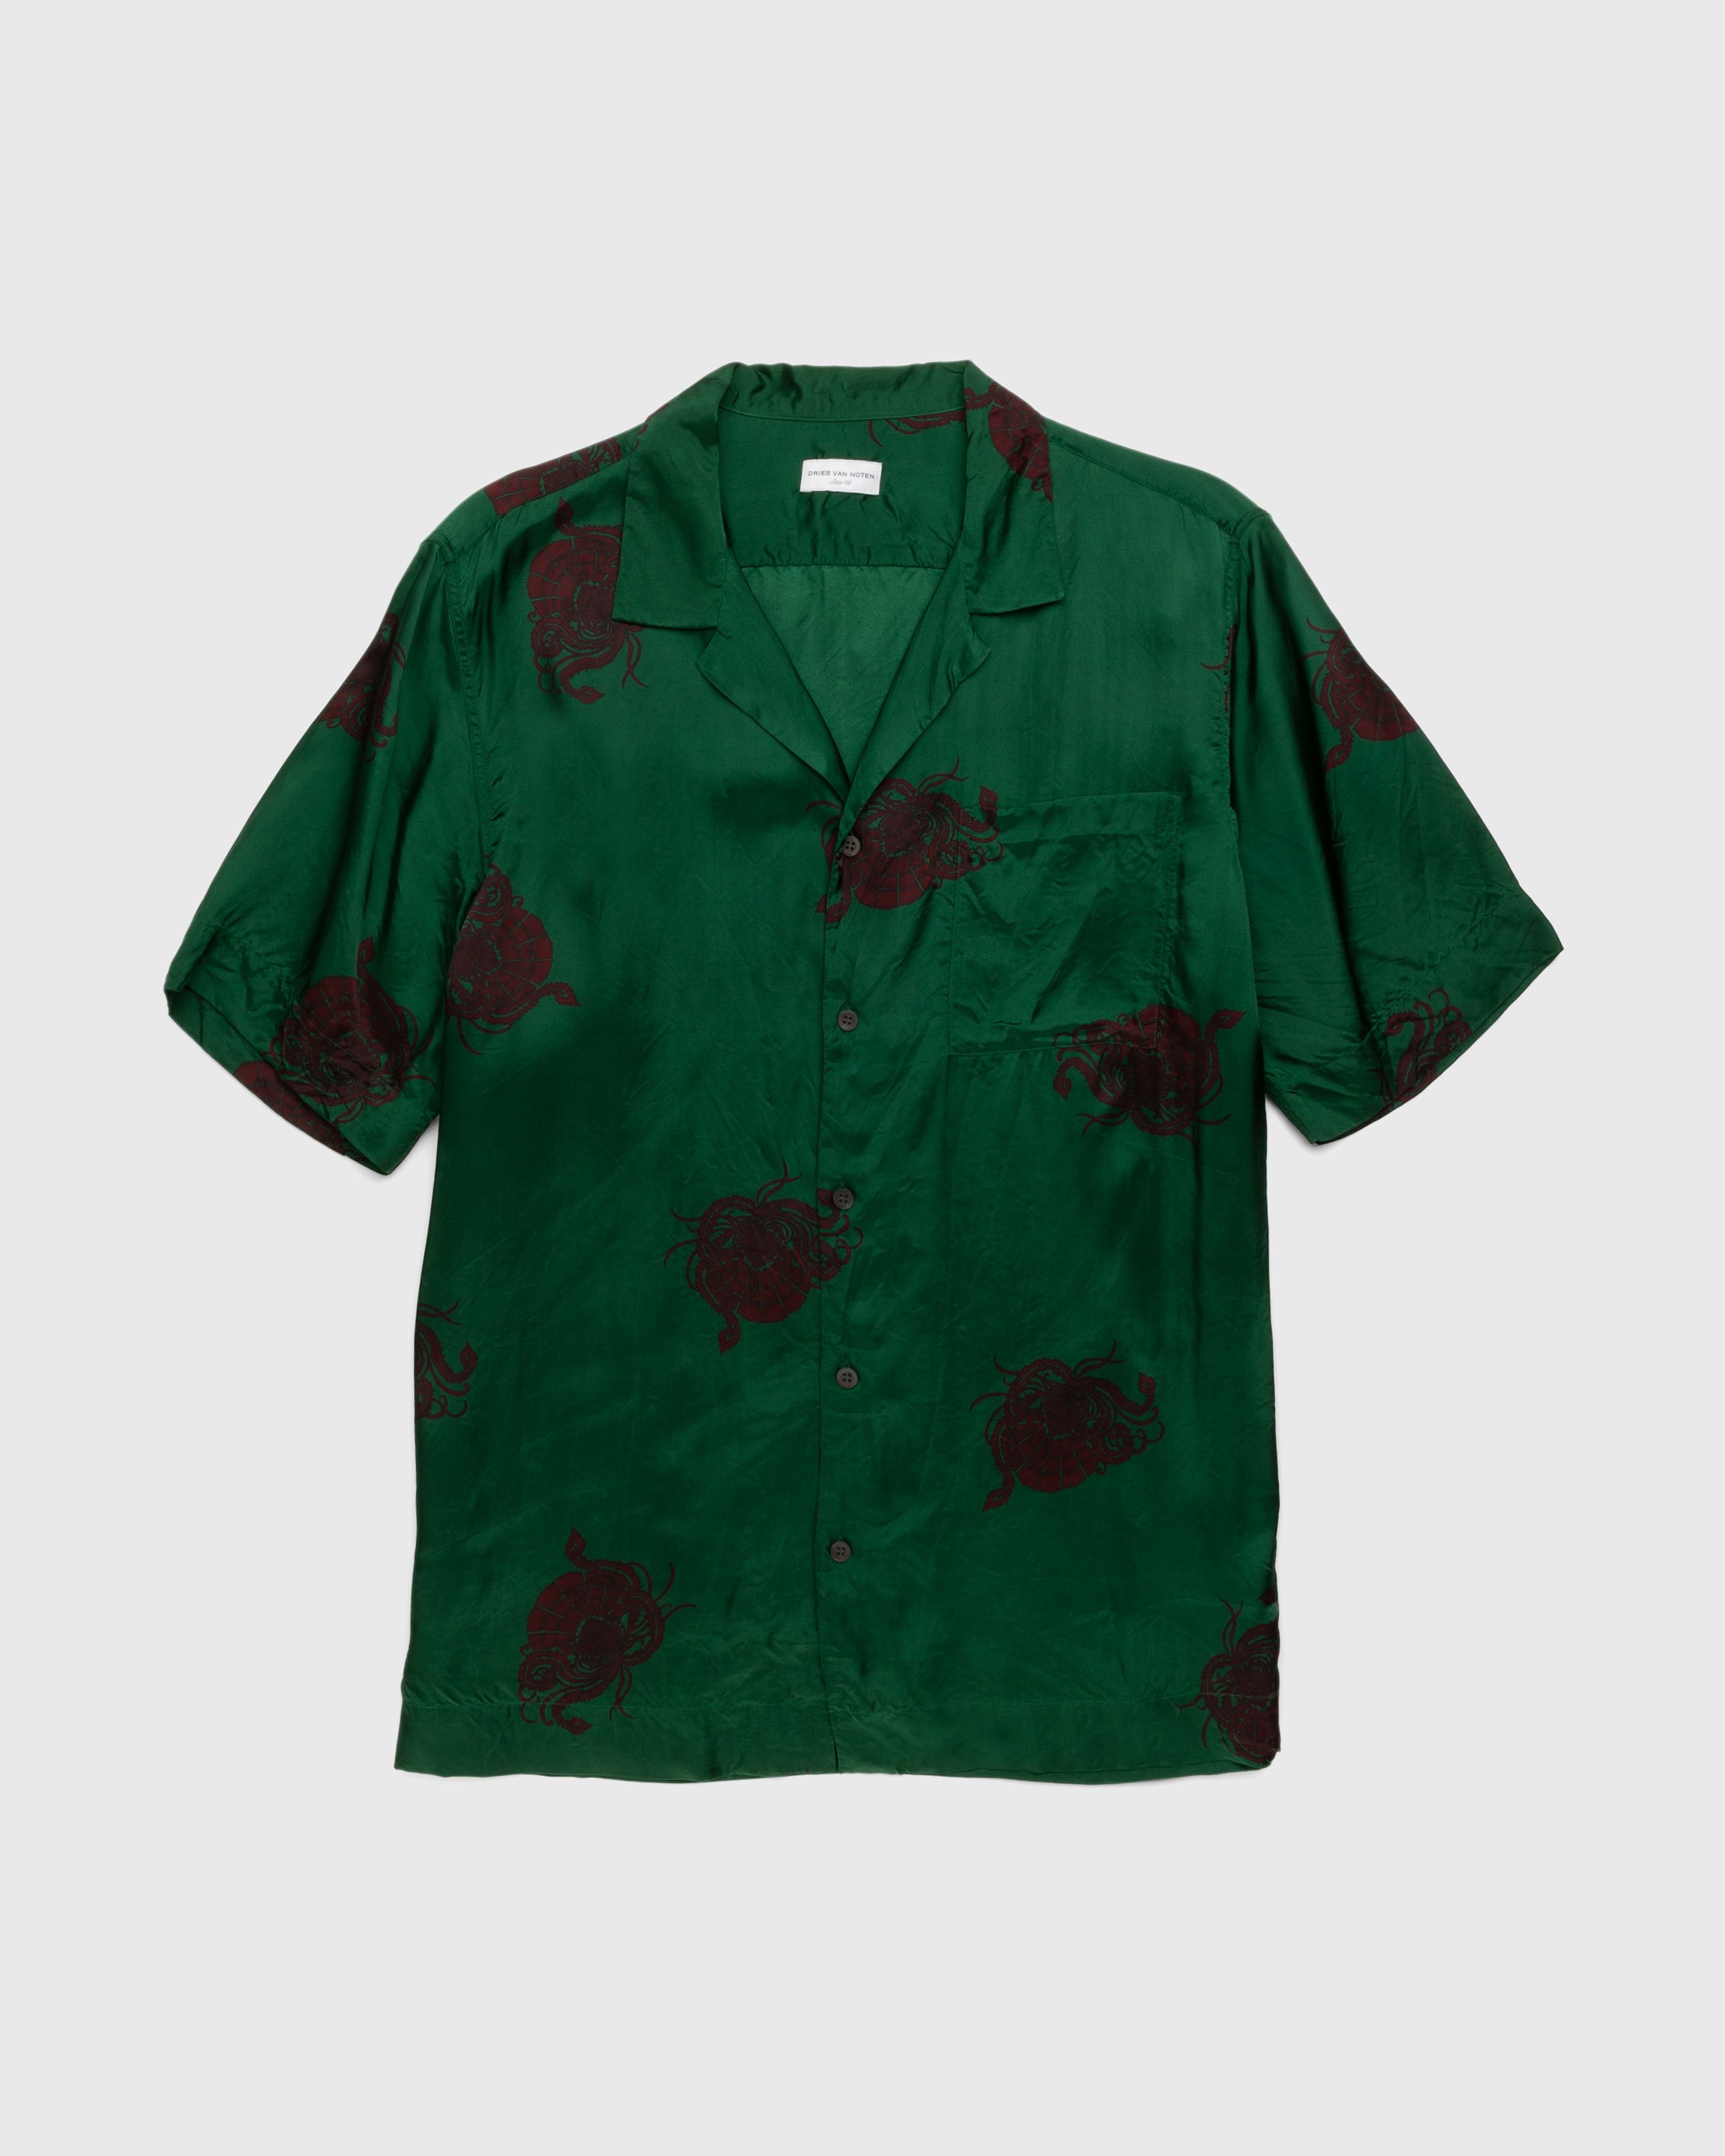 Dries van Noten - Carltone Shirt Bottle - Clothing - Green - Image 1